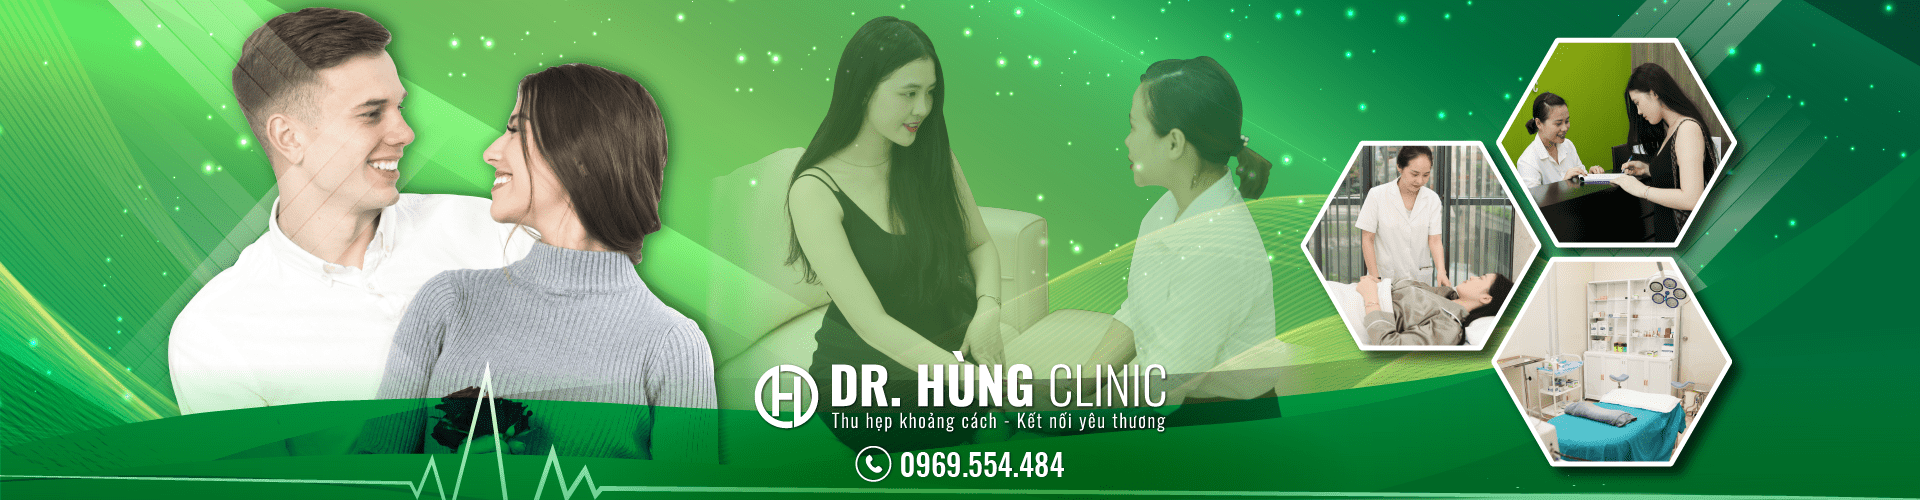 phòng khám dr.Hung clinic